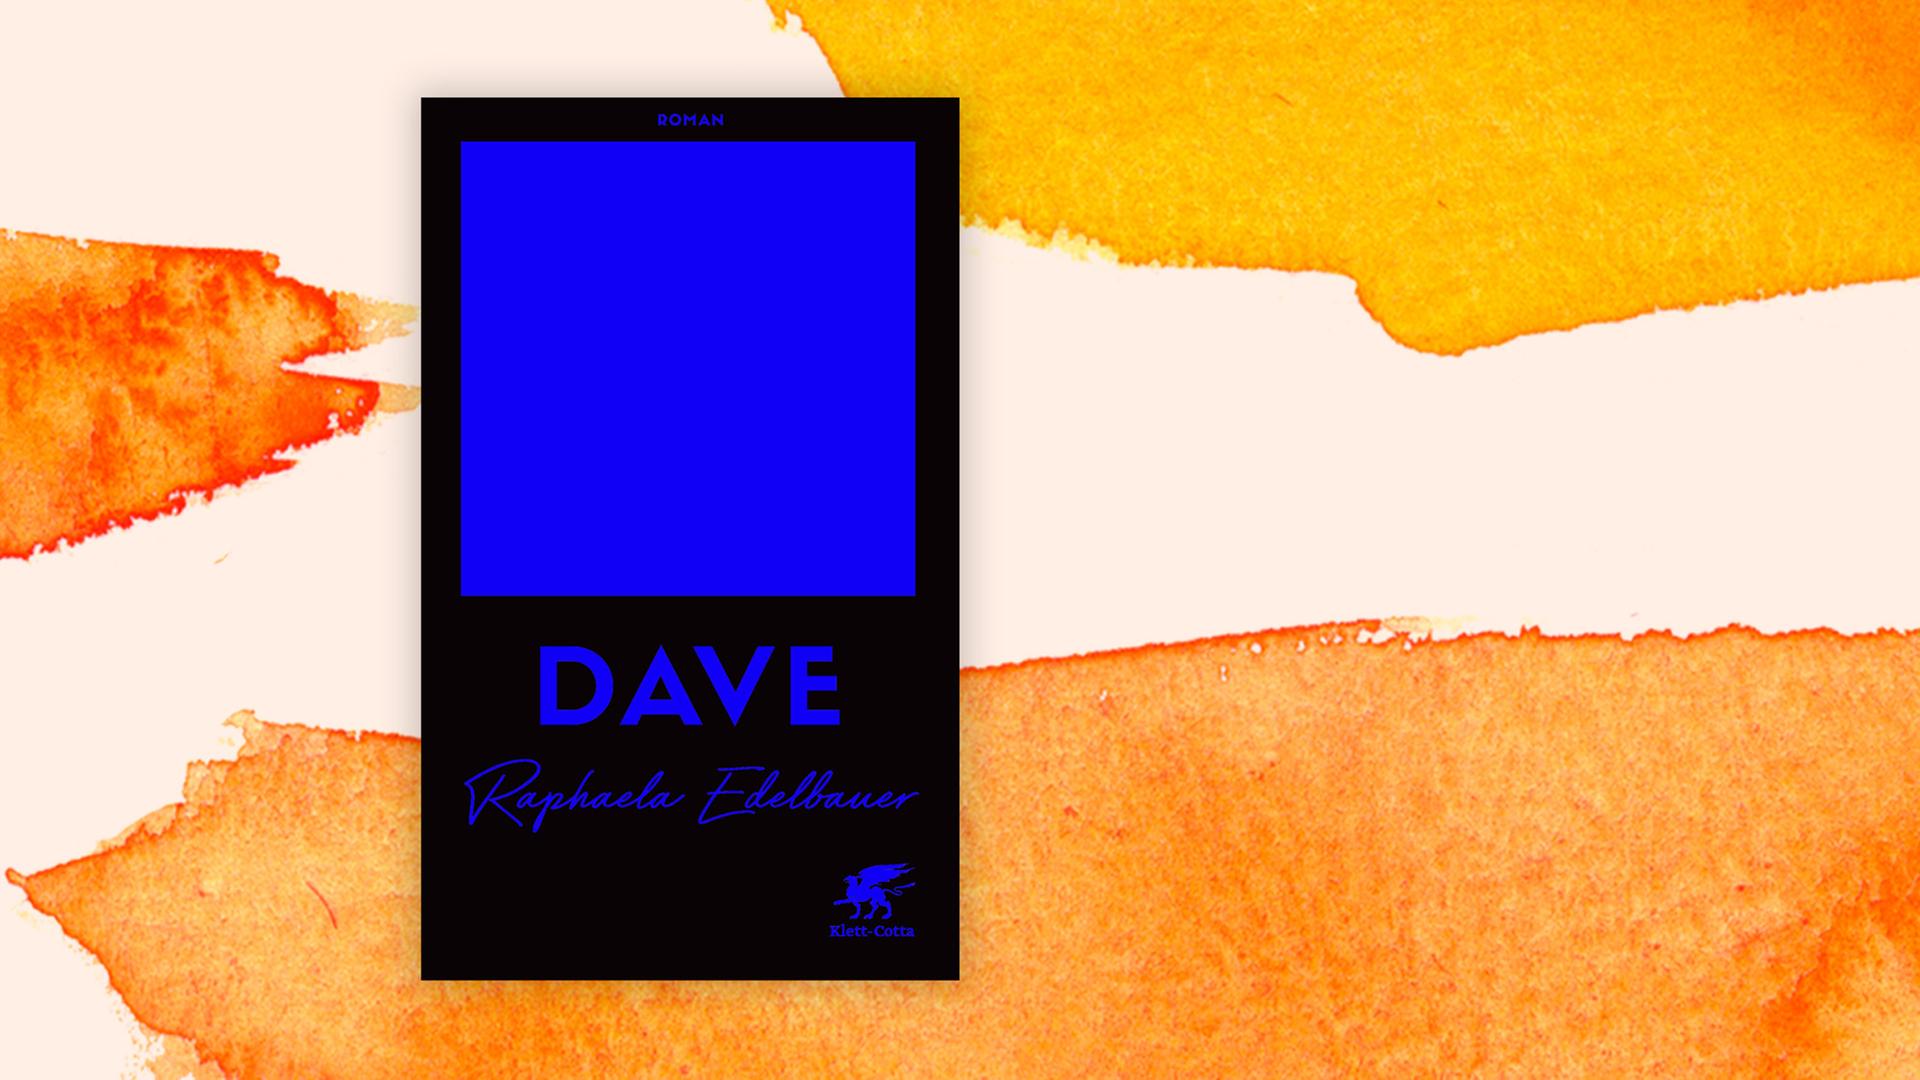 Buchcover zu "Dave" von Raphaela Edelbauer